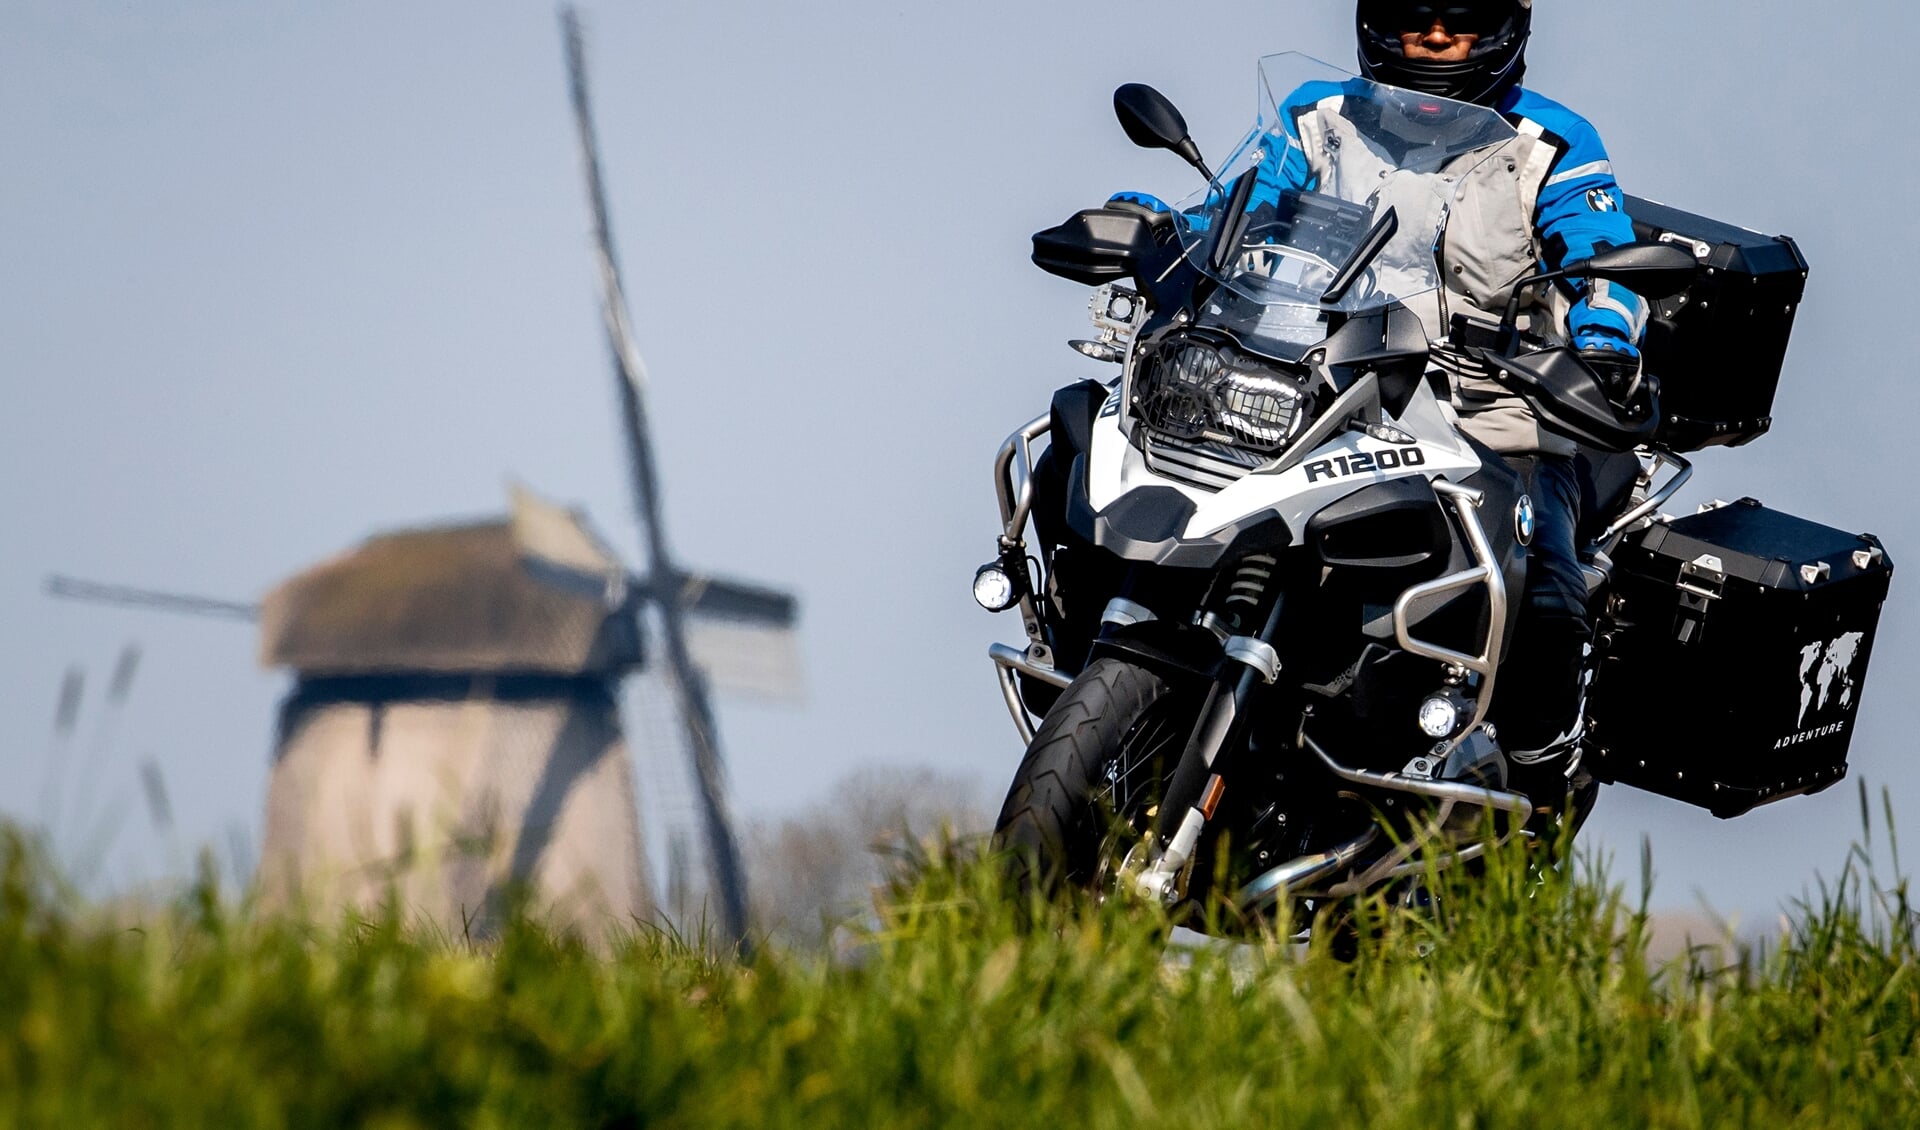 Komend weekeinde zal het extra druk zijn met motoren op weg naar de TT in Assen. In Gorinchem is motorrijden minder populair. 